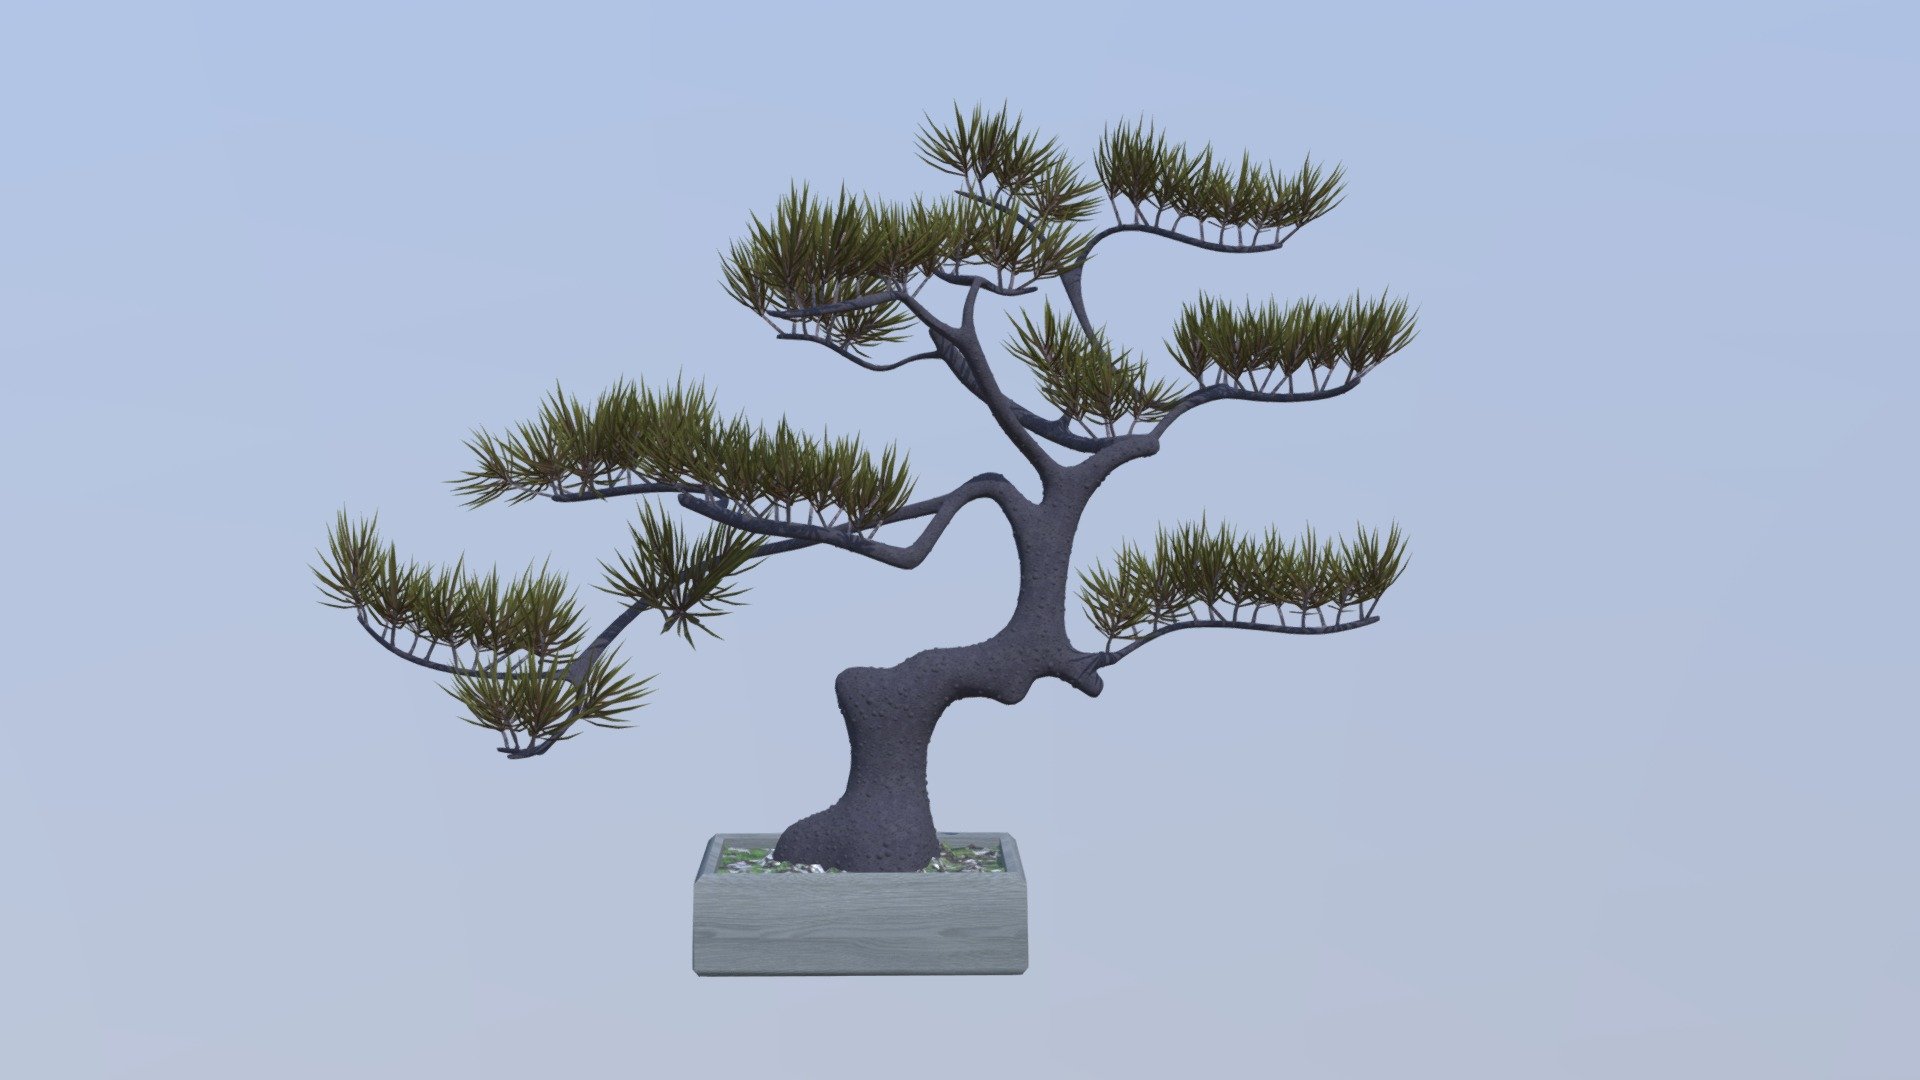 Pine bonsai tree